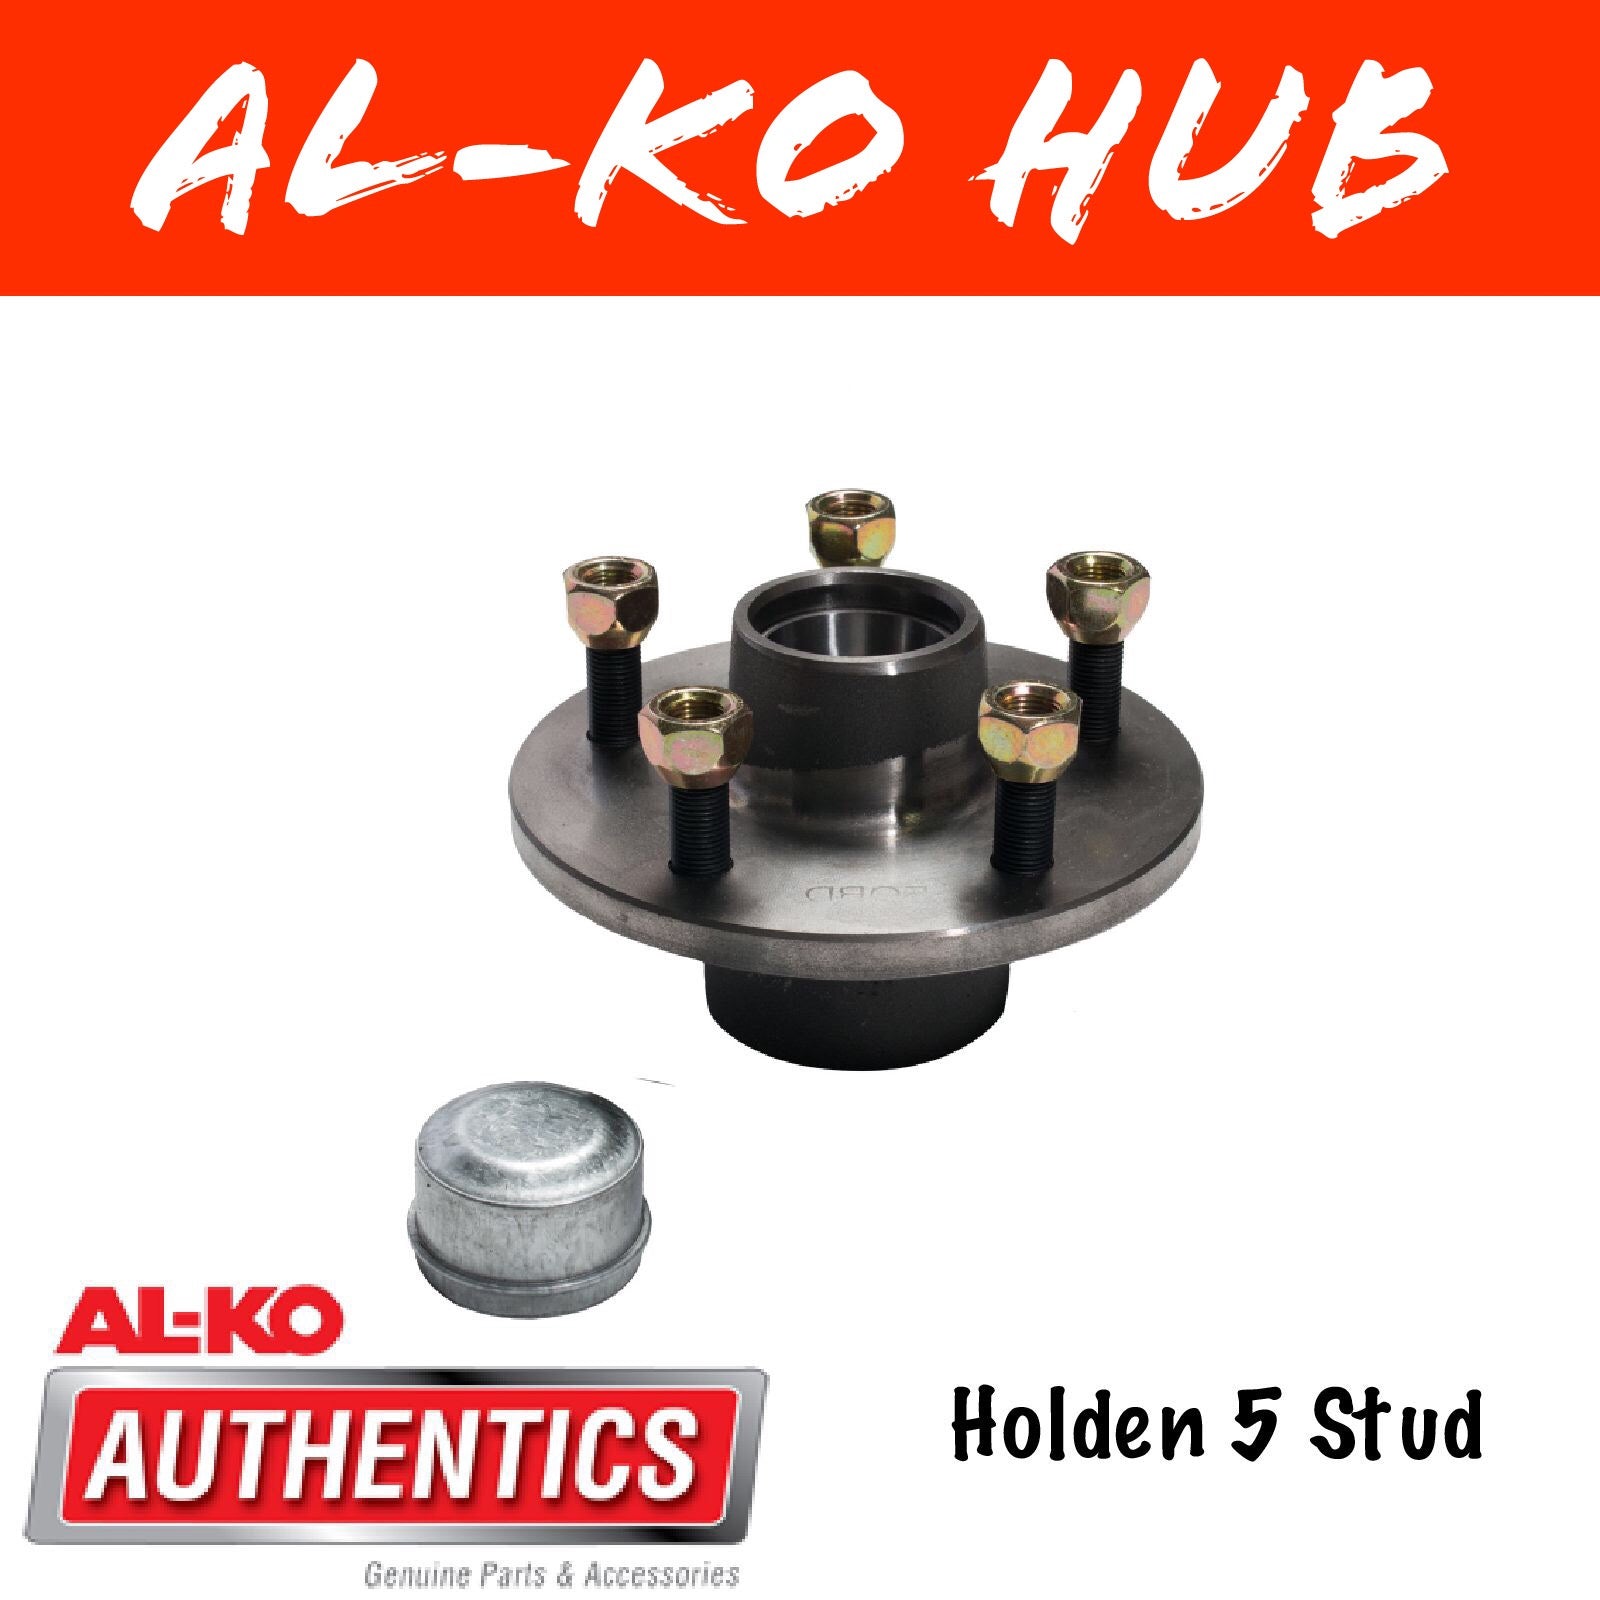 AL-KO HT Holden Unbraked Hub with Holden Bearings